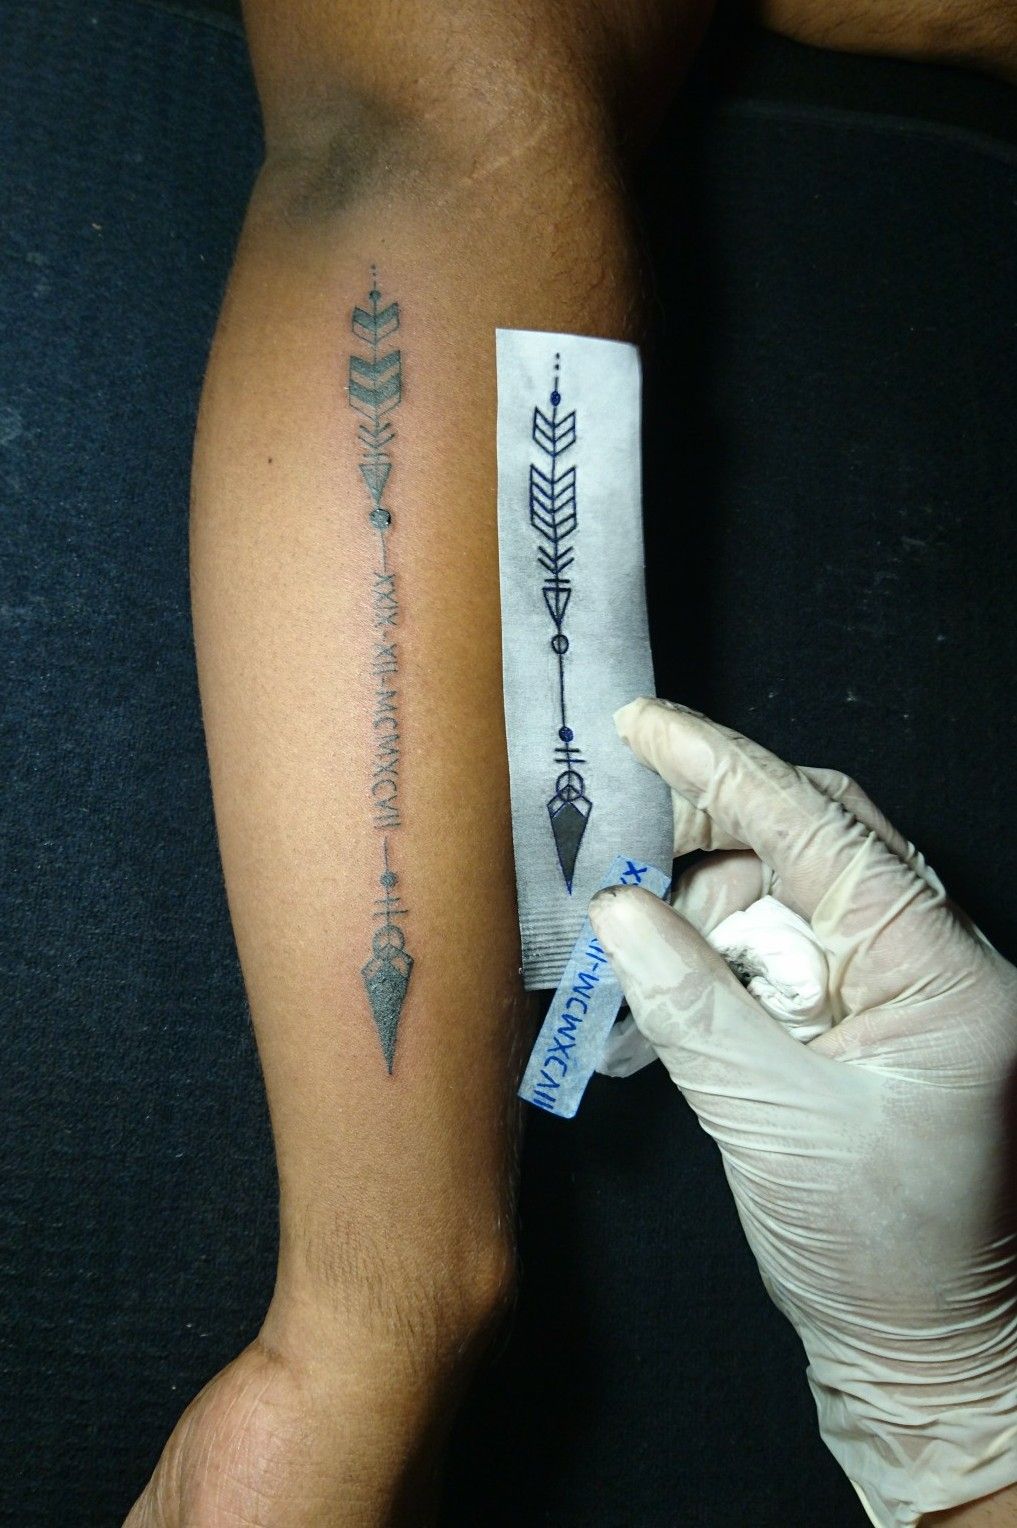 Genesis 273 for my love of hunting  Tattoo designs men Arrow tattoo  Small tattoos